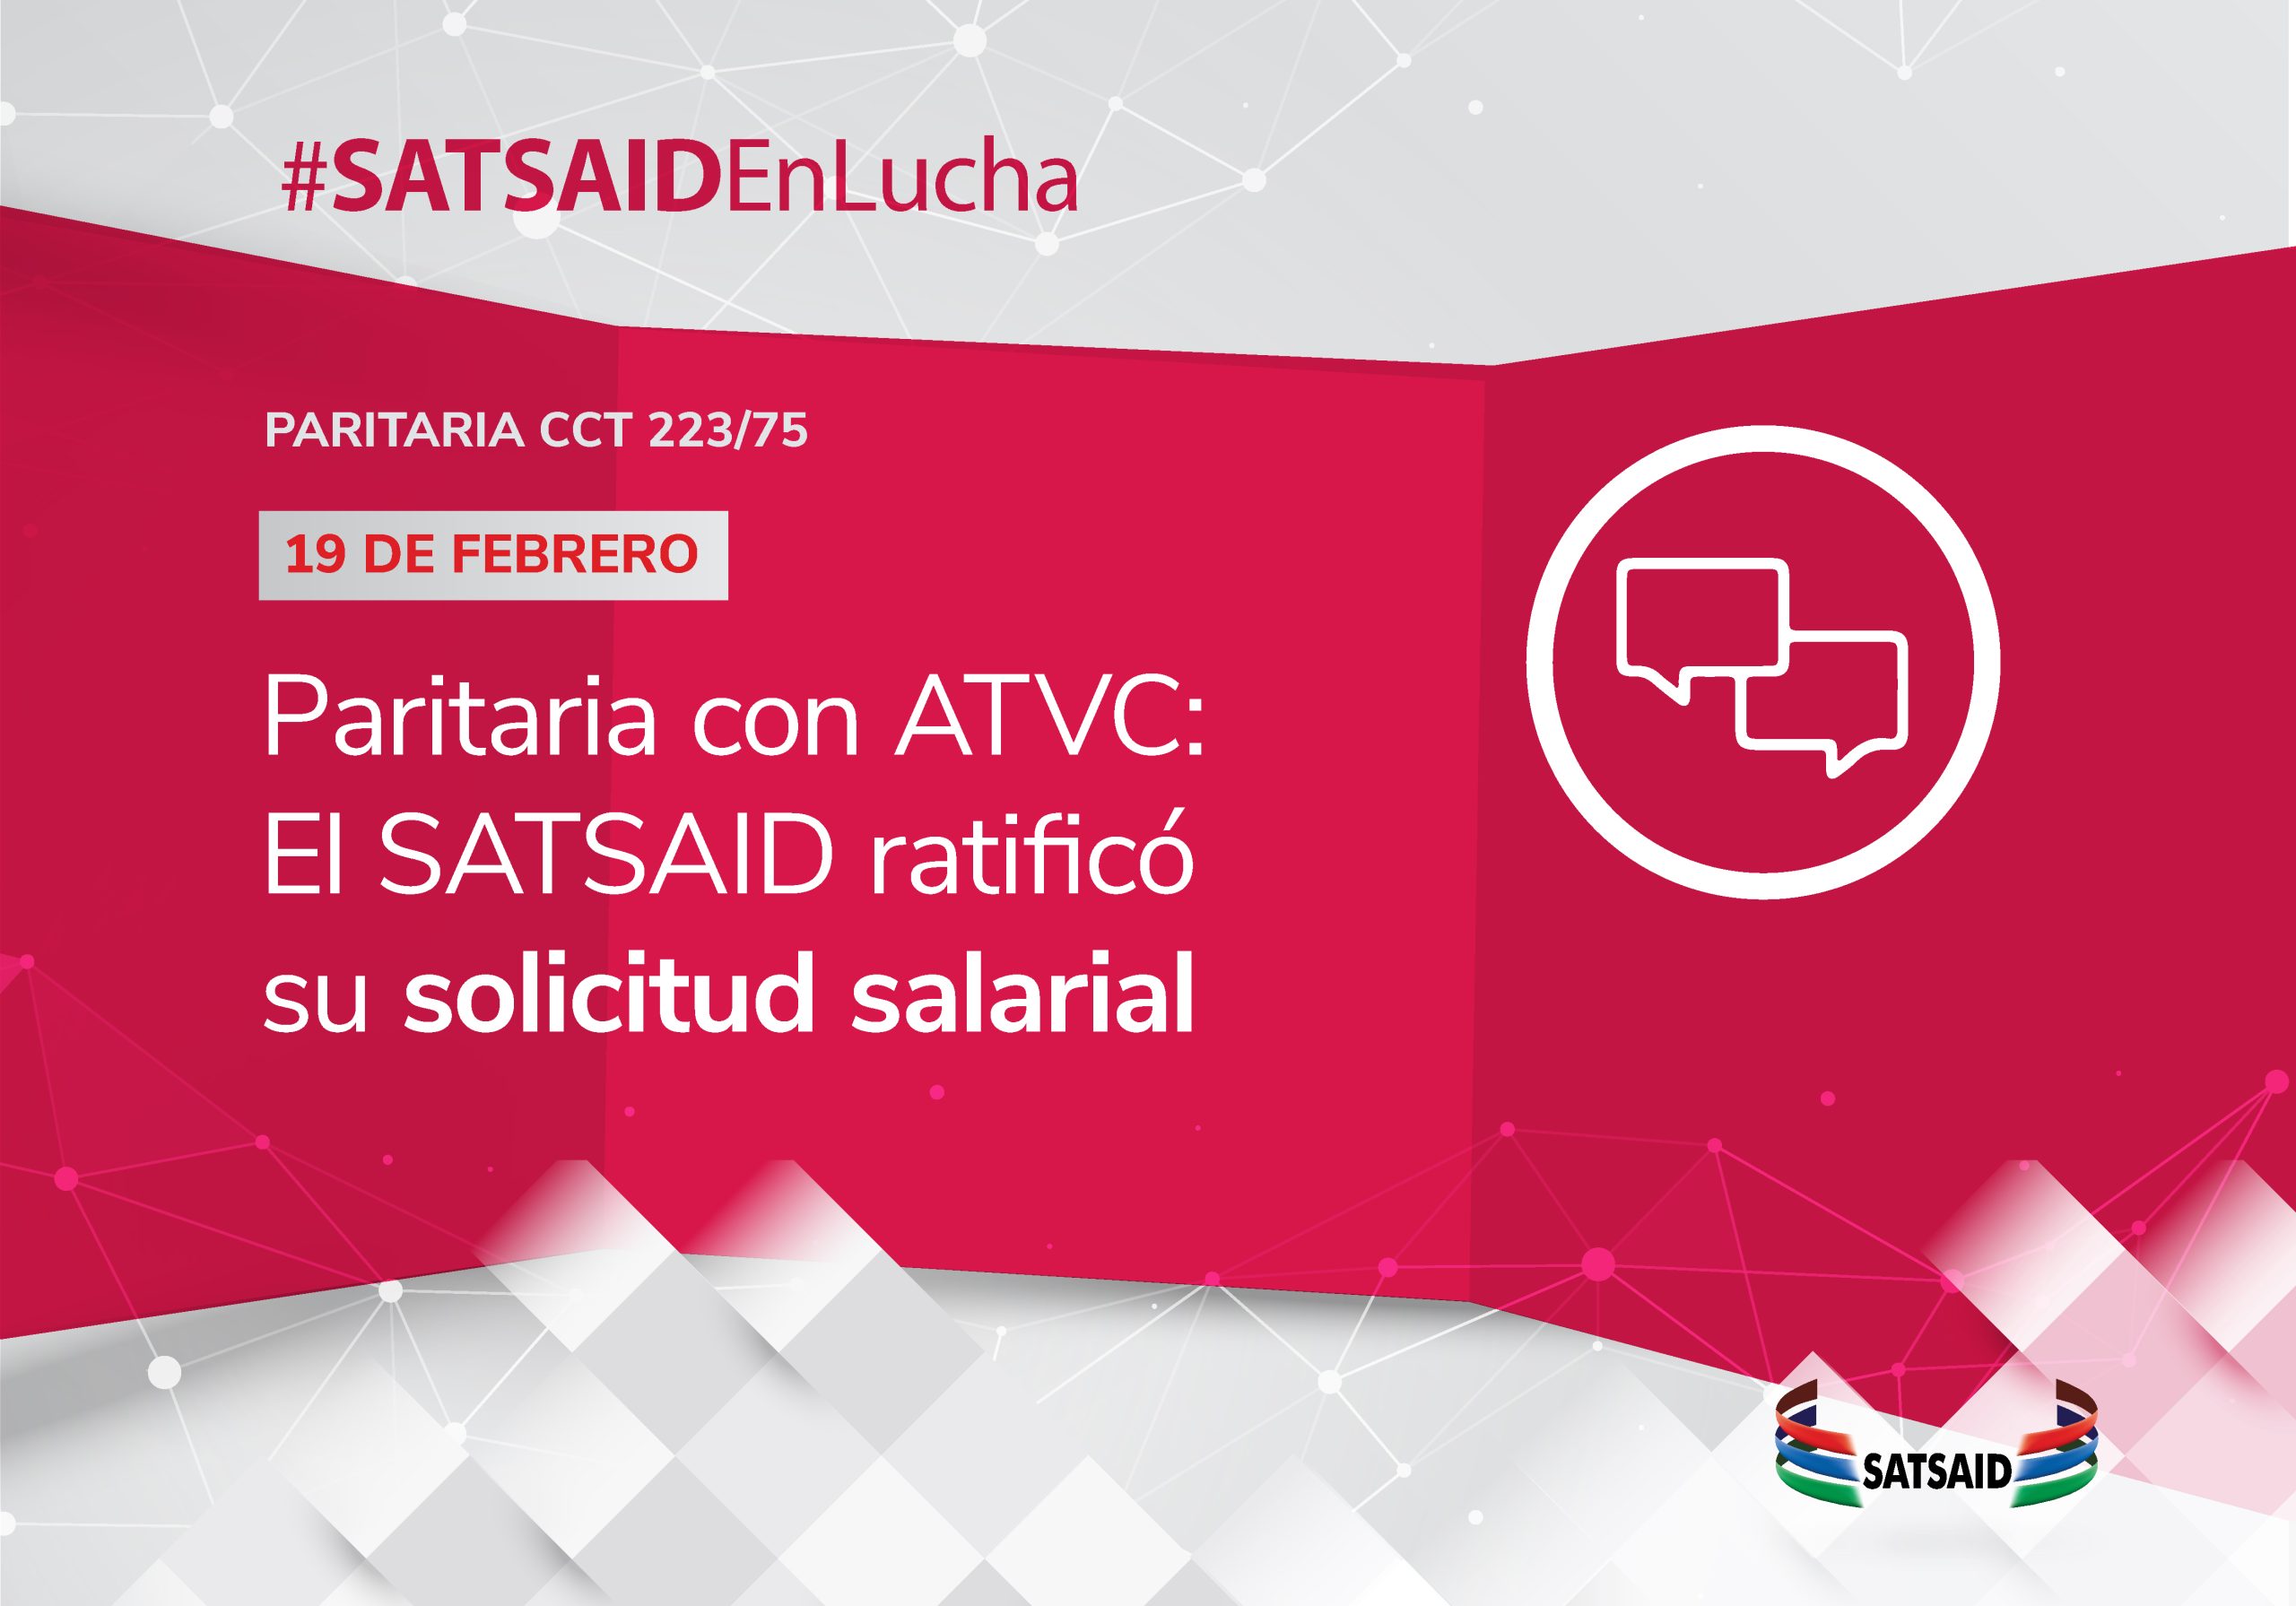 PARITARIA CON ATVC: EL SATSAID RATIFICÓ SU SOLICITUD SALARIAL 